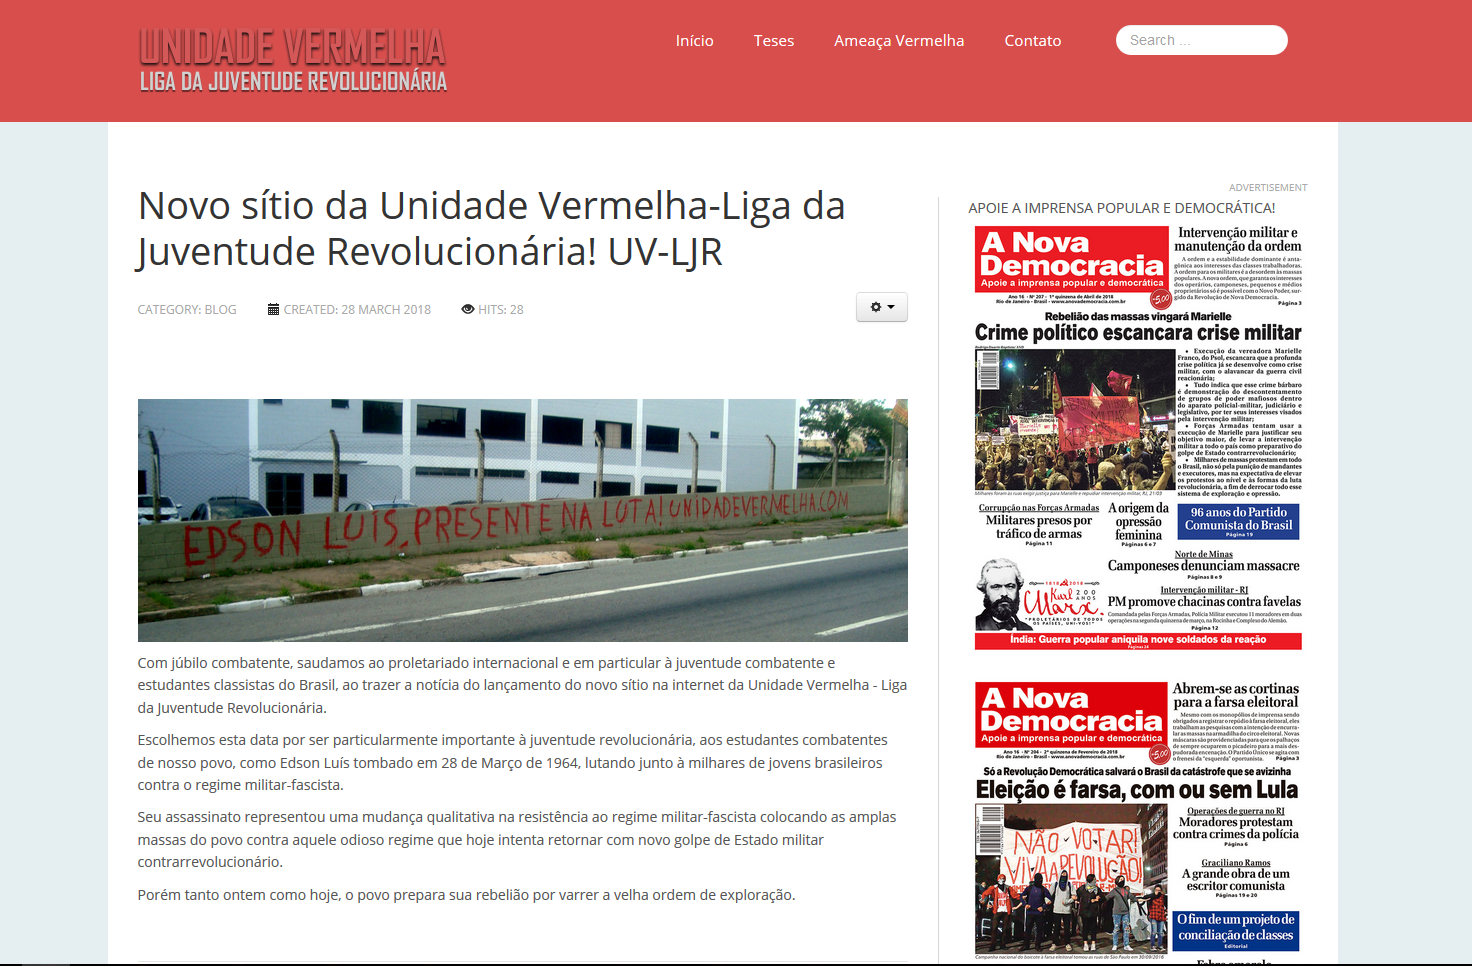 Unidade Vermlha website